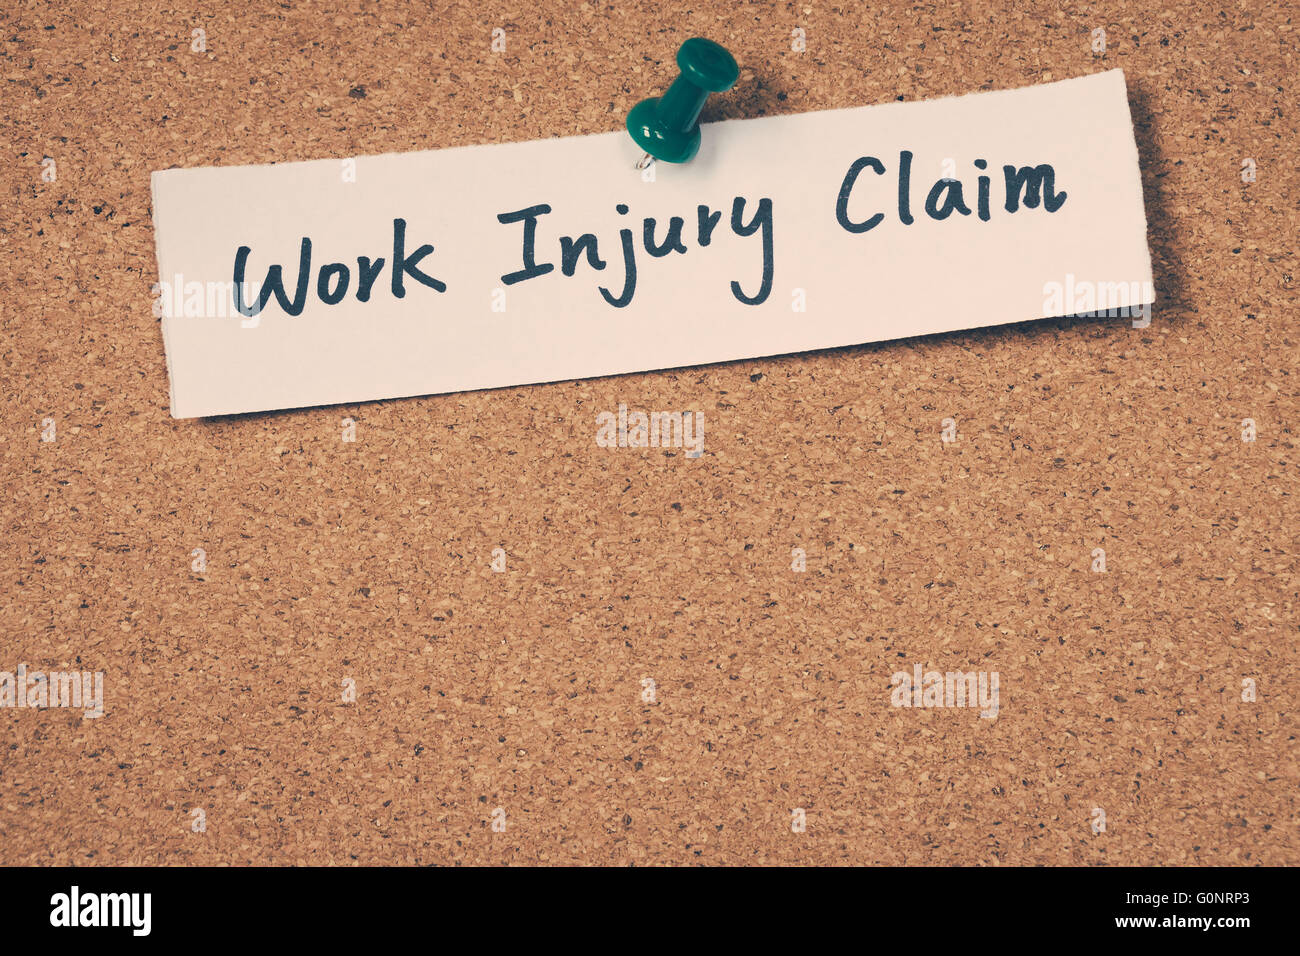 Work injury claim Stock Photo